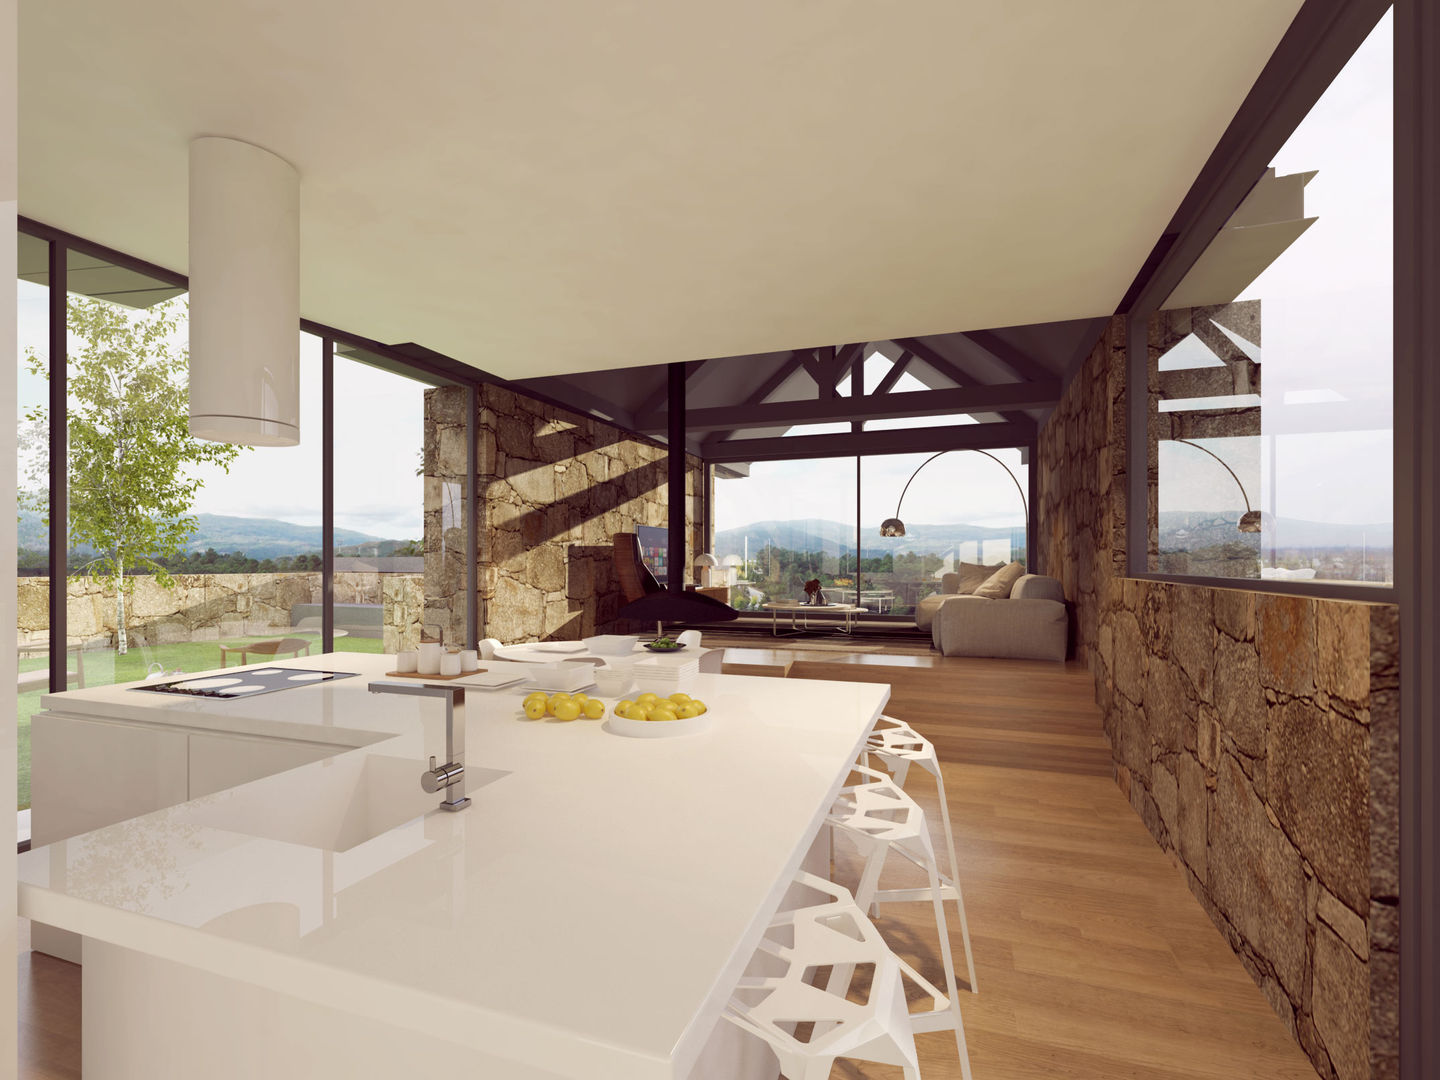 Recuperação de uma habitação rural em Melgaço, Davide Domingues Arquitecto Davide Domingues Arquitecto Kitchen